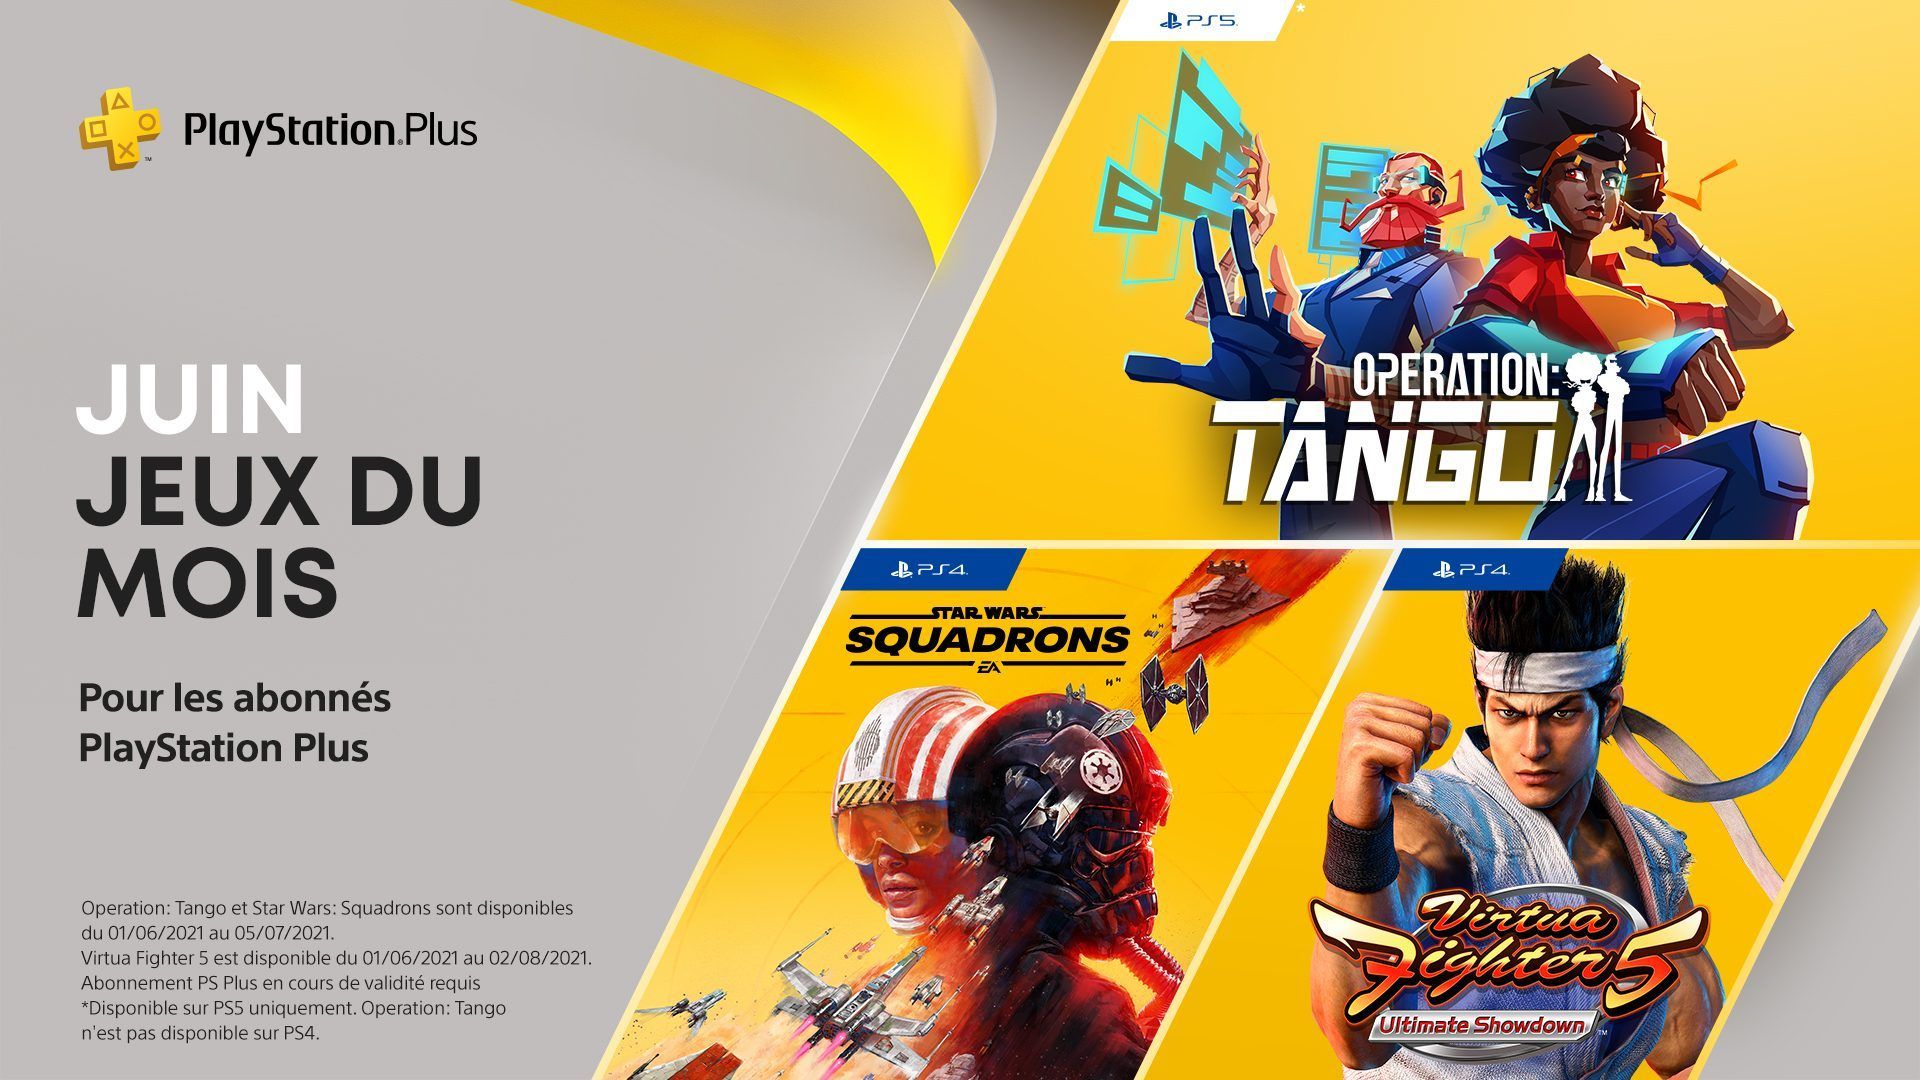 Les jeux PlayStation Plus du mois de juin : Operation: Tango, Virtua Fighter 5: Ultimate Showdown, Star Wars Squadrons